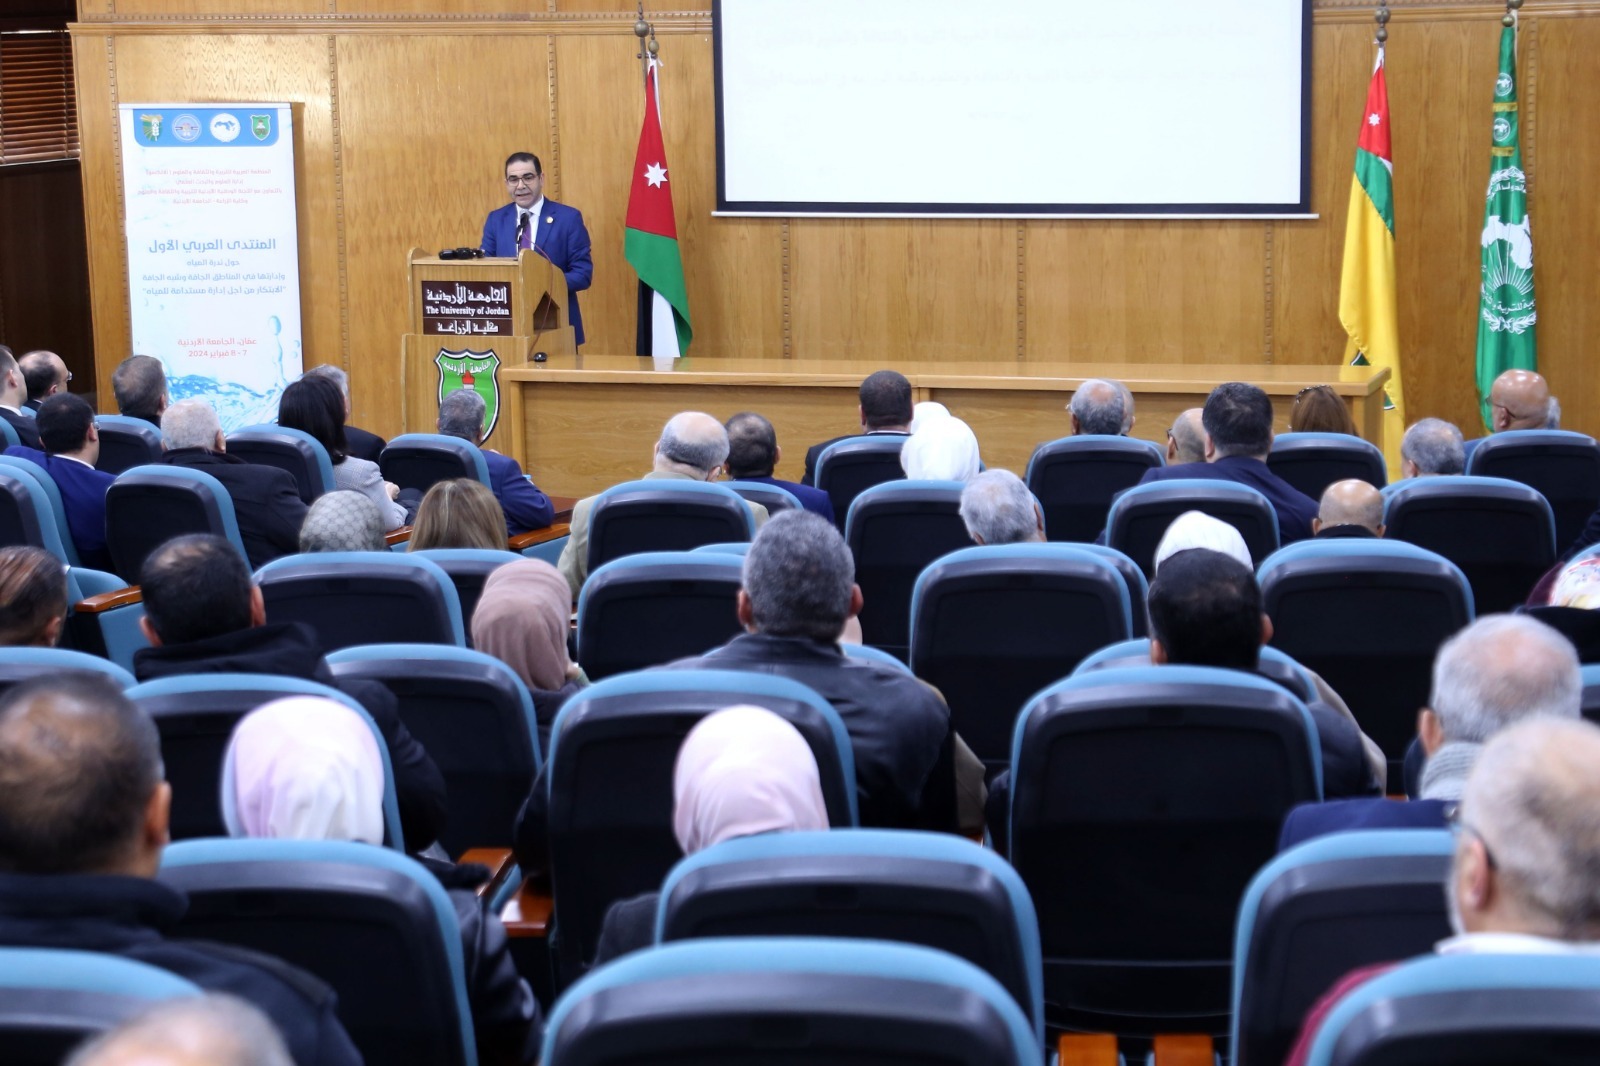 "الأردنية" انطلاق فعاليات المنتدى العربي الأول حول ندرة المياه وإدارتها